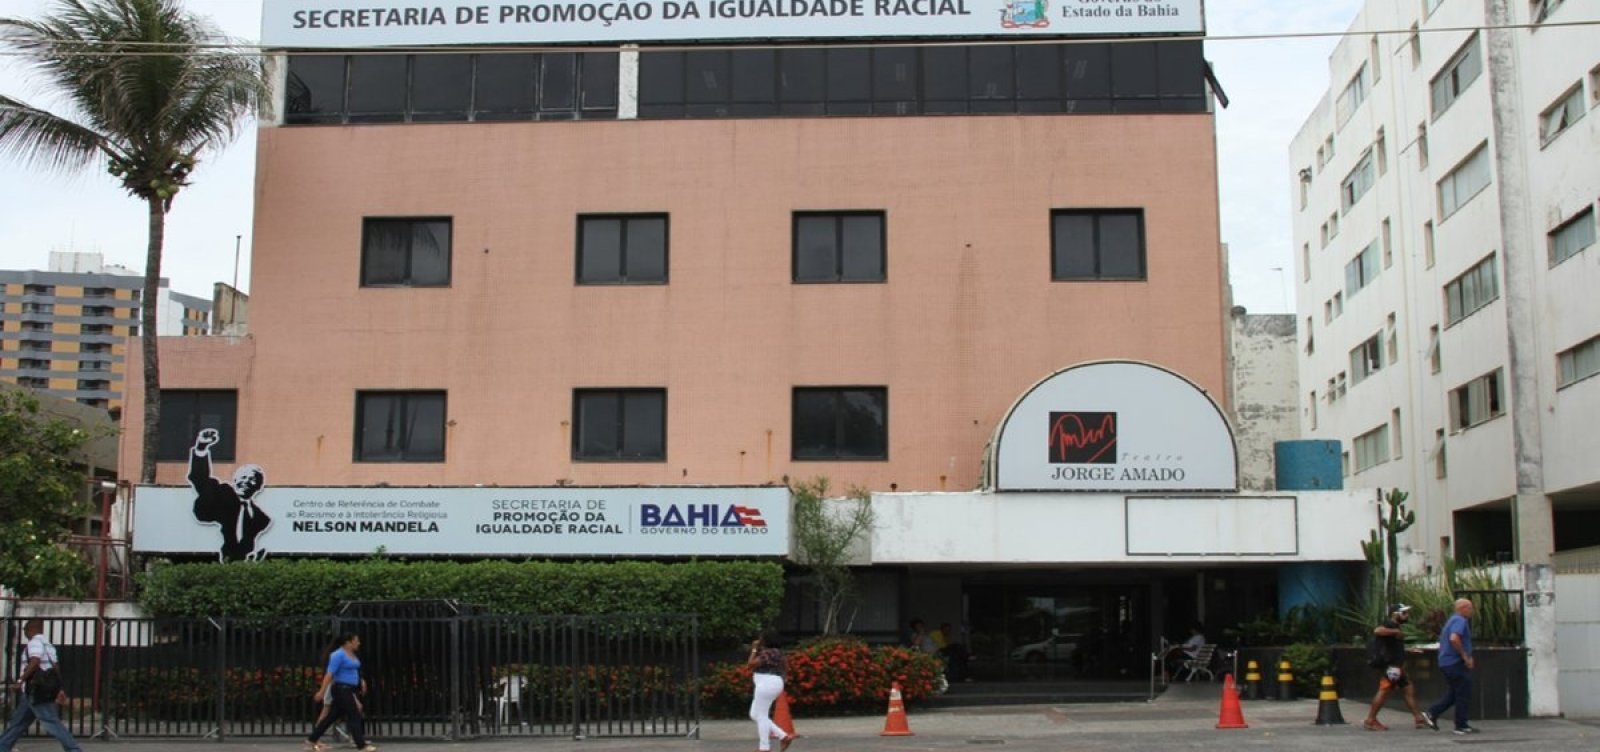 Bahia registrou 111 casos de racismo em 2021, afirma secretaria